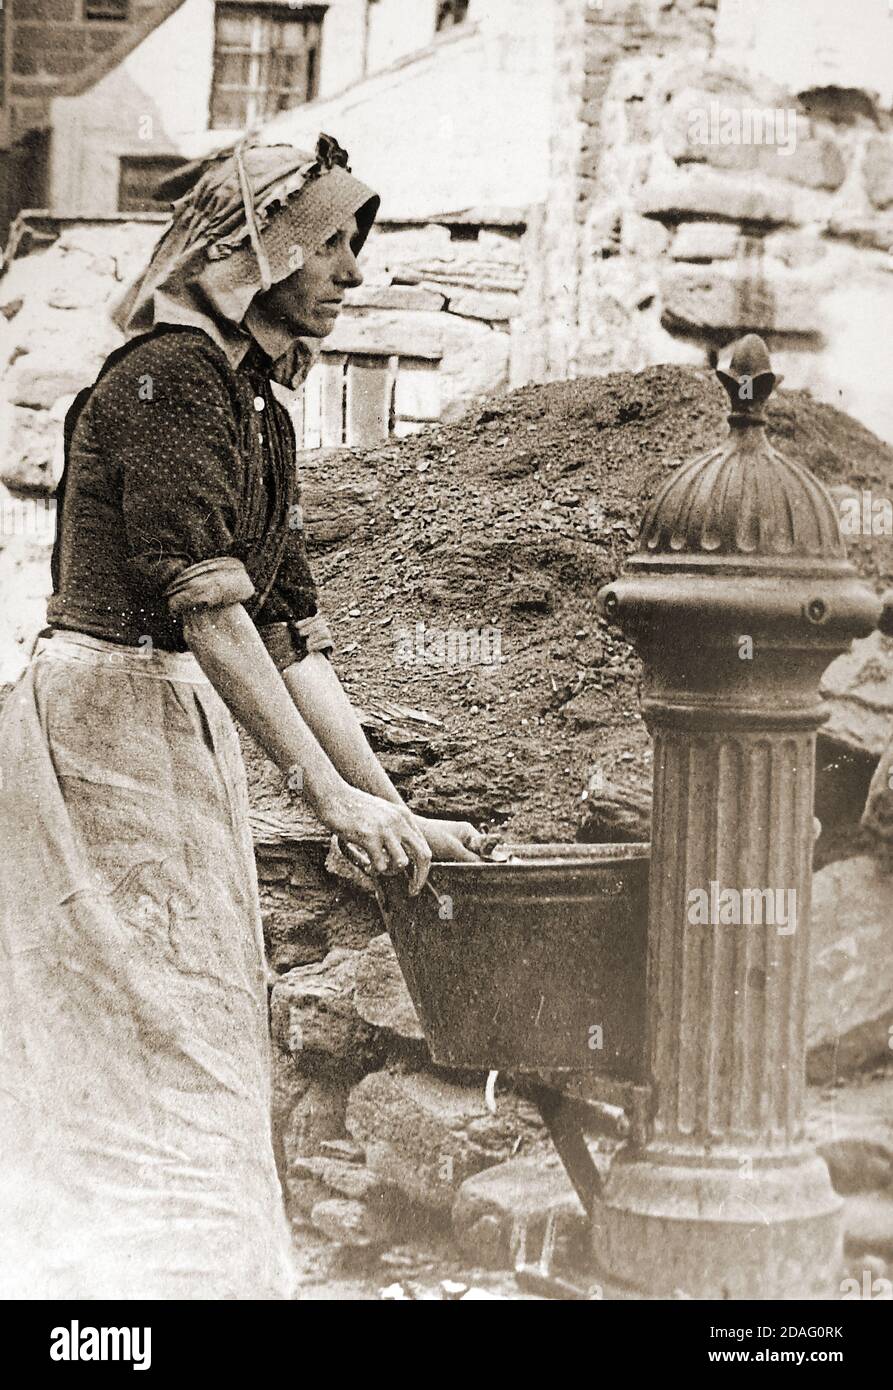 Ein viktorianisches Foto einer Frau, die Wasser an der Cragg Pump, Whitby, North Yorkshire in den späten 1800er Jahren sammelt. Stufen führten von der Pumpe hinunter auf die Pier Straße, wo Fischfrauen 'gip' oder Heringe, als sie auf dem Kai direkt von den Fischerbooten ankamen. Die Pumpe war damals die einzige Frischwasserquelle in der Gegend. Die Kopfbedeckung, die sie trägt, ist als 'Steerths' Bonnet bekannt und hat ihren Namen vom Dorf Staithes, wo sie hergestellt wurden, obwohl sie weit unter den Fischergemeinden anderswo getragen wurden. Stockfoto